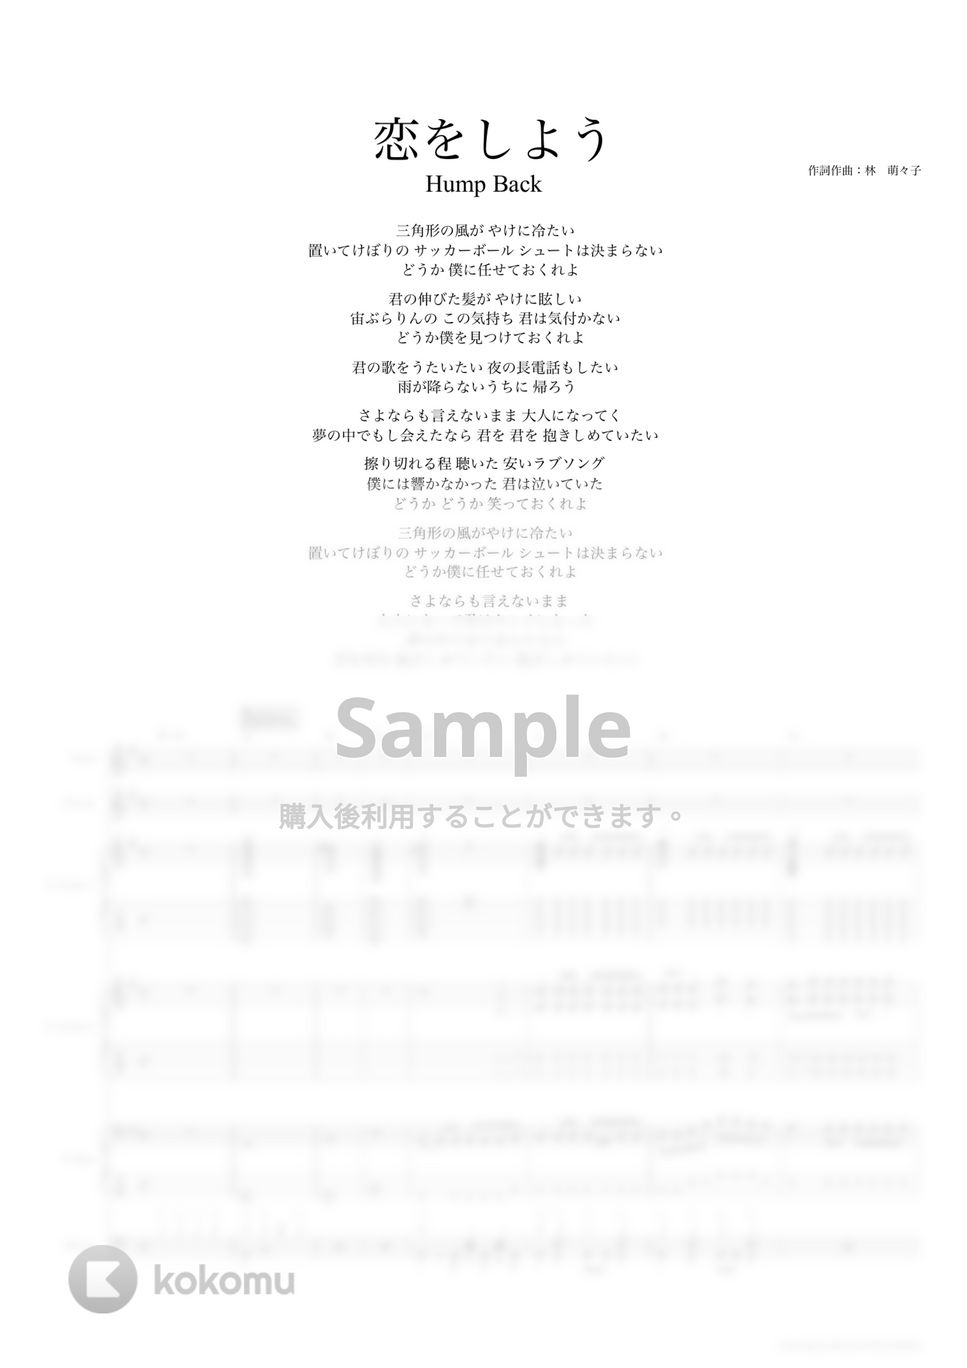 Hump Back - 恋をしよう (バンドスコア) by TRIAD GUITAR SCHOOL